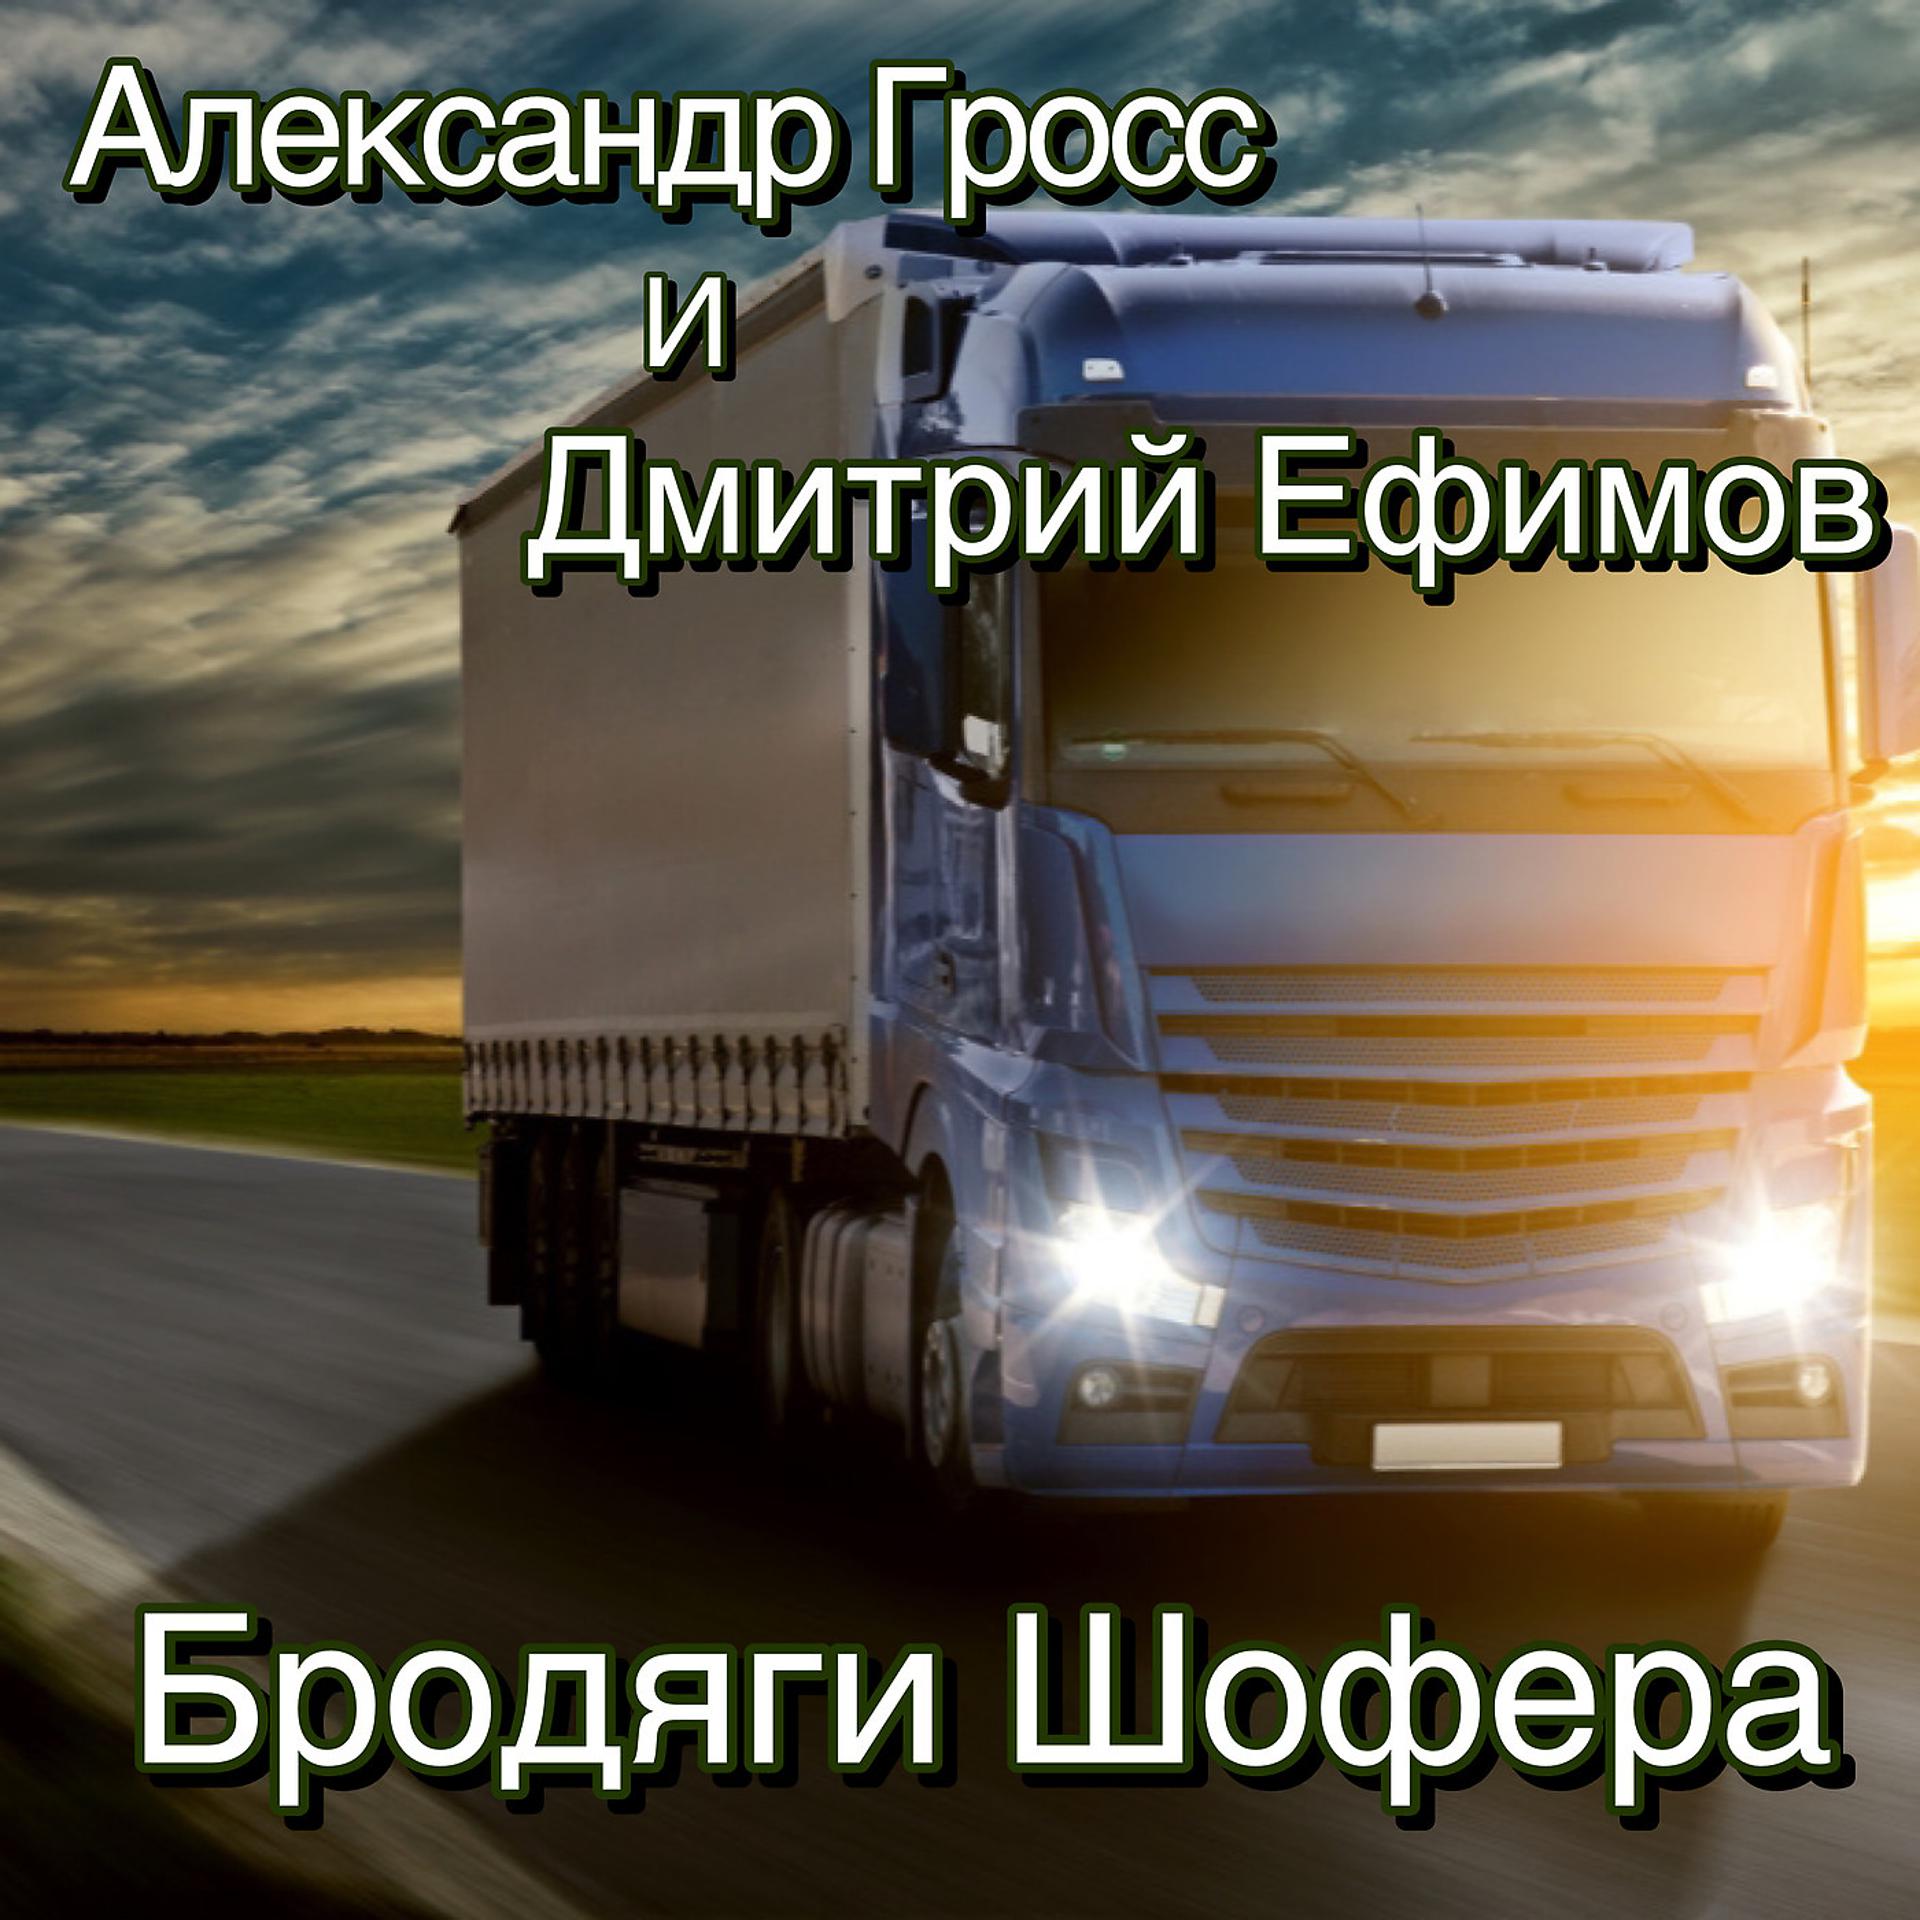 Постер к треку Александр Гросс и Дмитрий Ефимов - Олекминск-Якутск